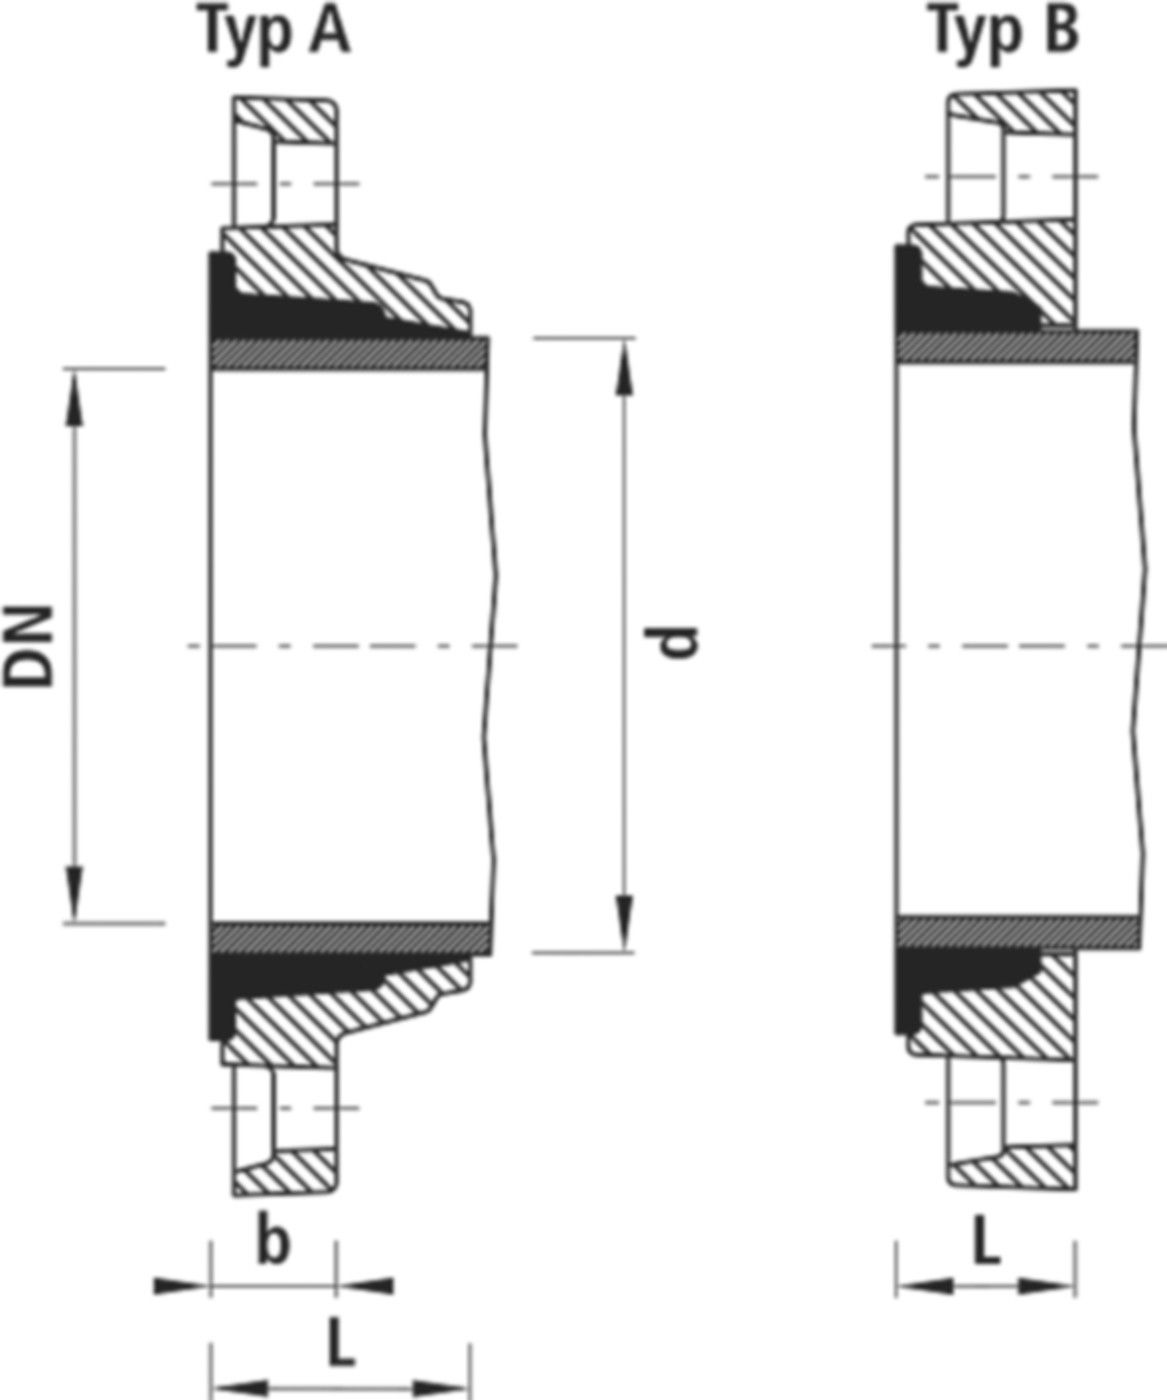 Zweikammer-Flansch für Stahlrohre 7130 PN 10 DN 200 / AD 219mm - Hawle Flanschformstücke